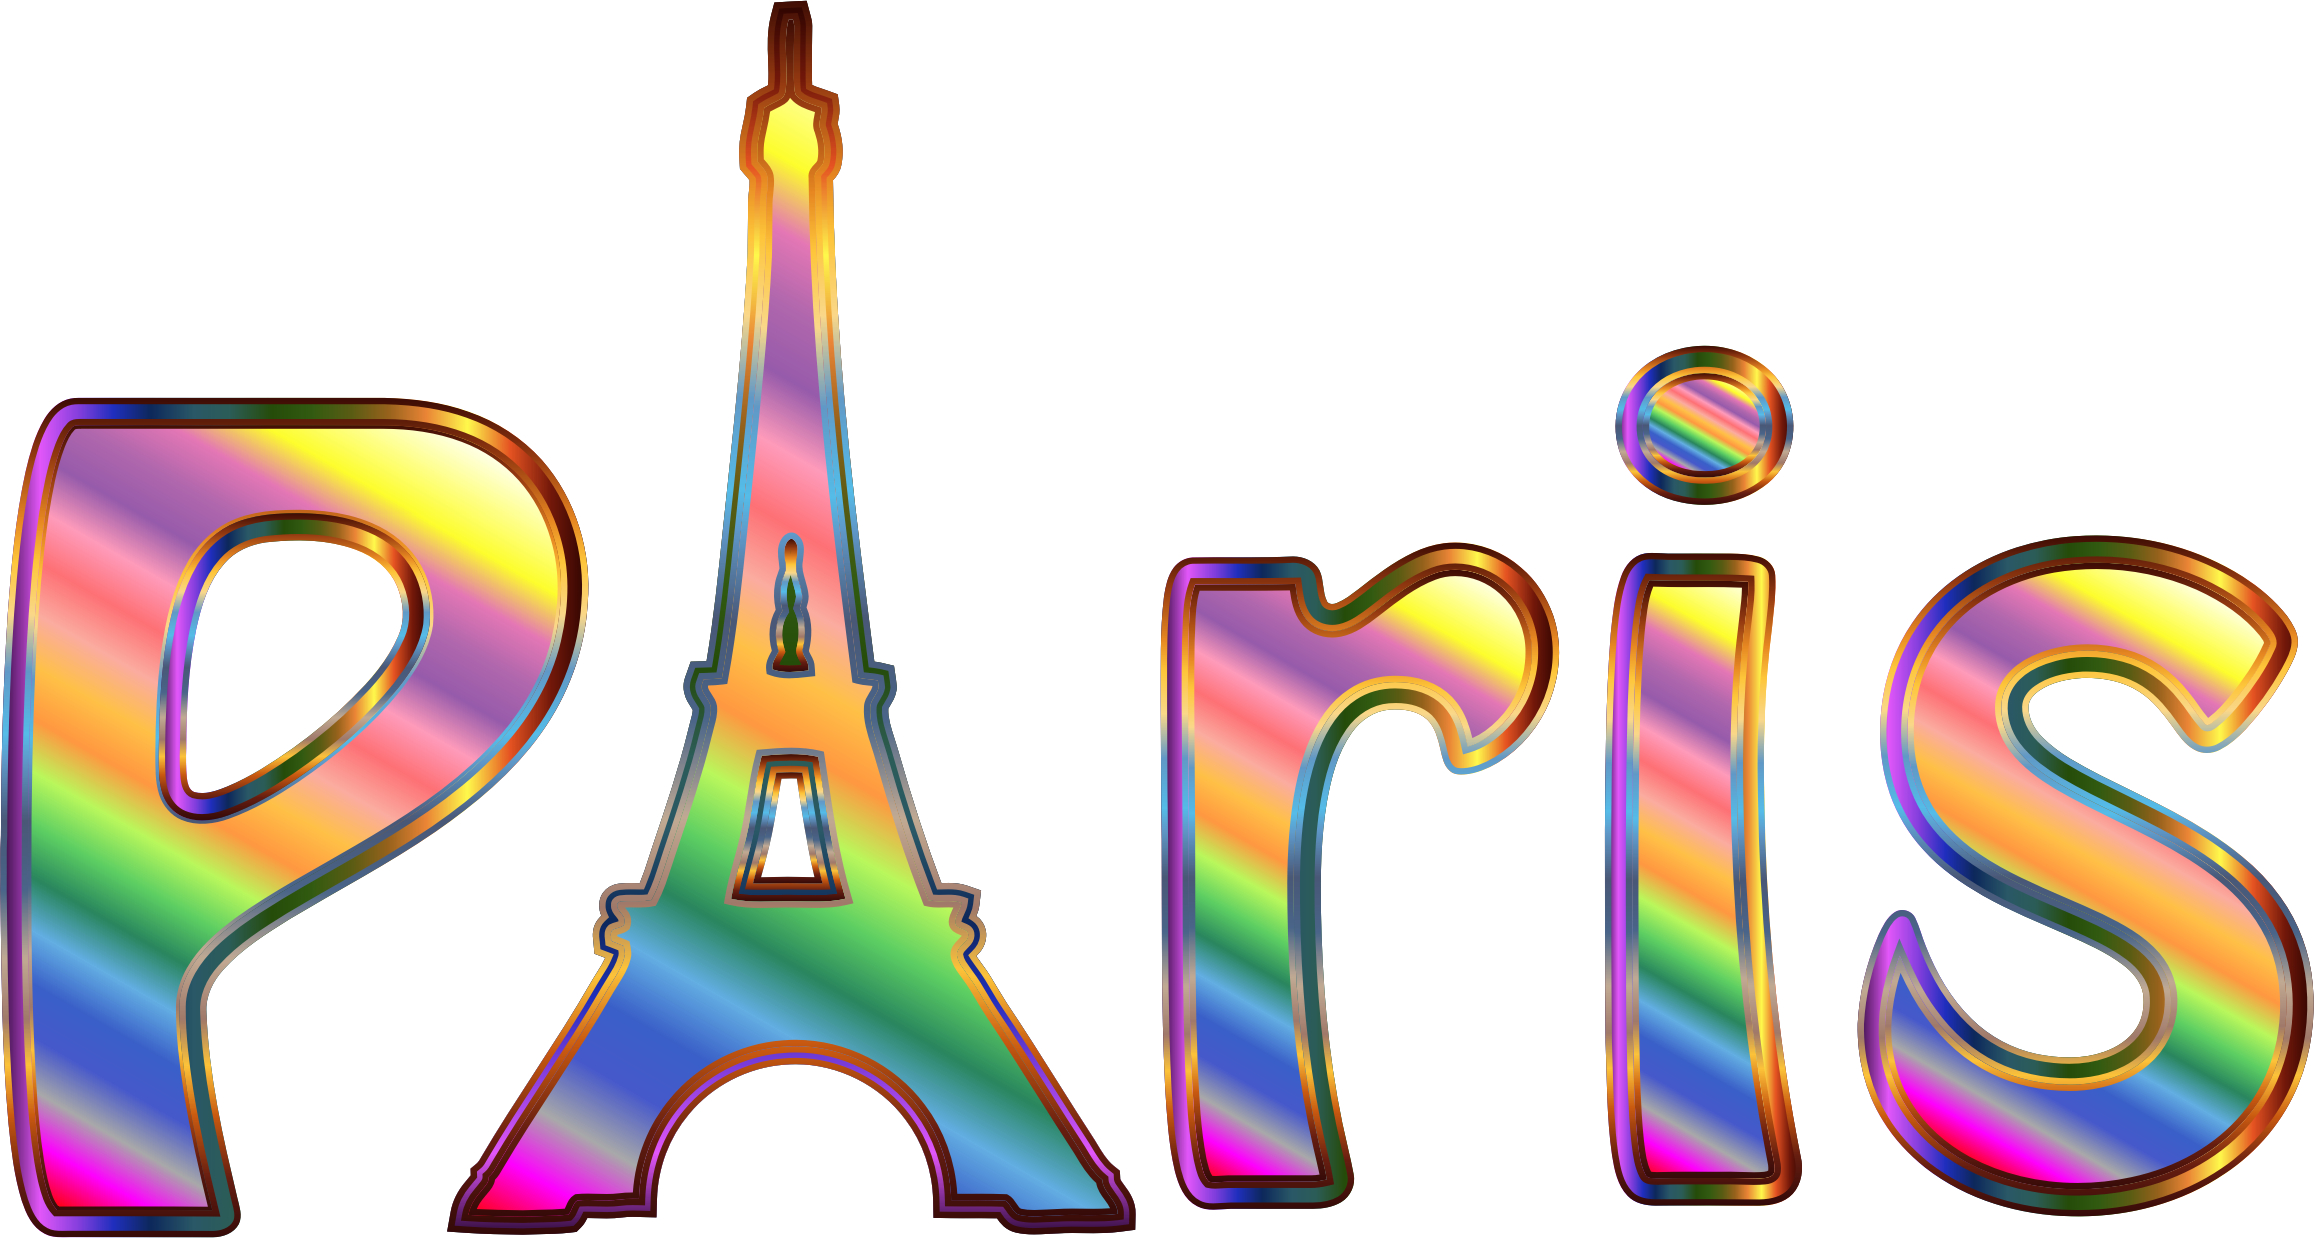 Paris Png Image Transparent - Paris With No Background Clipart (2314x1238), Png Download